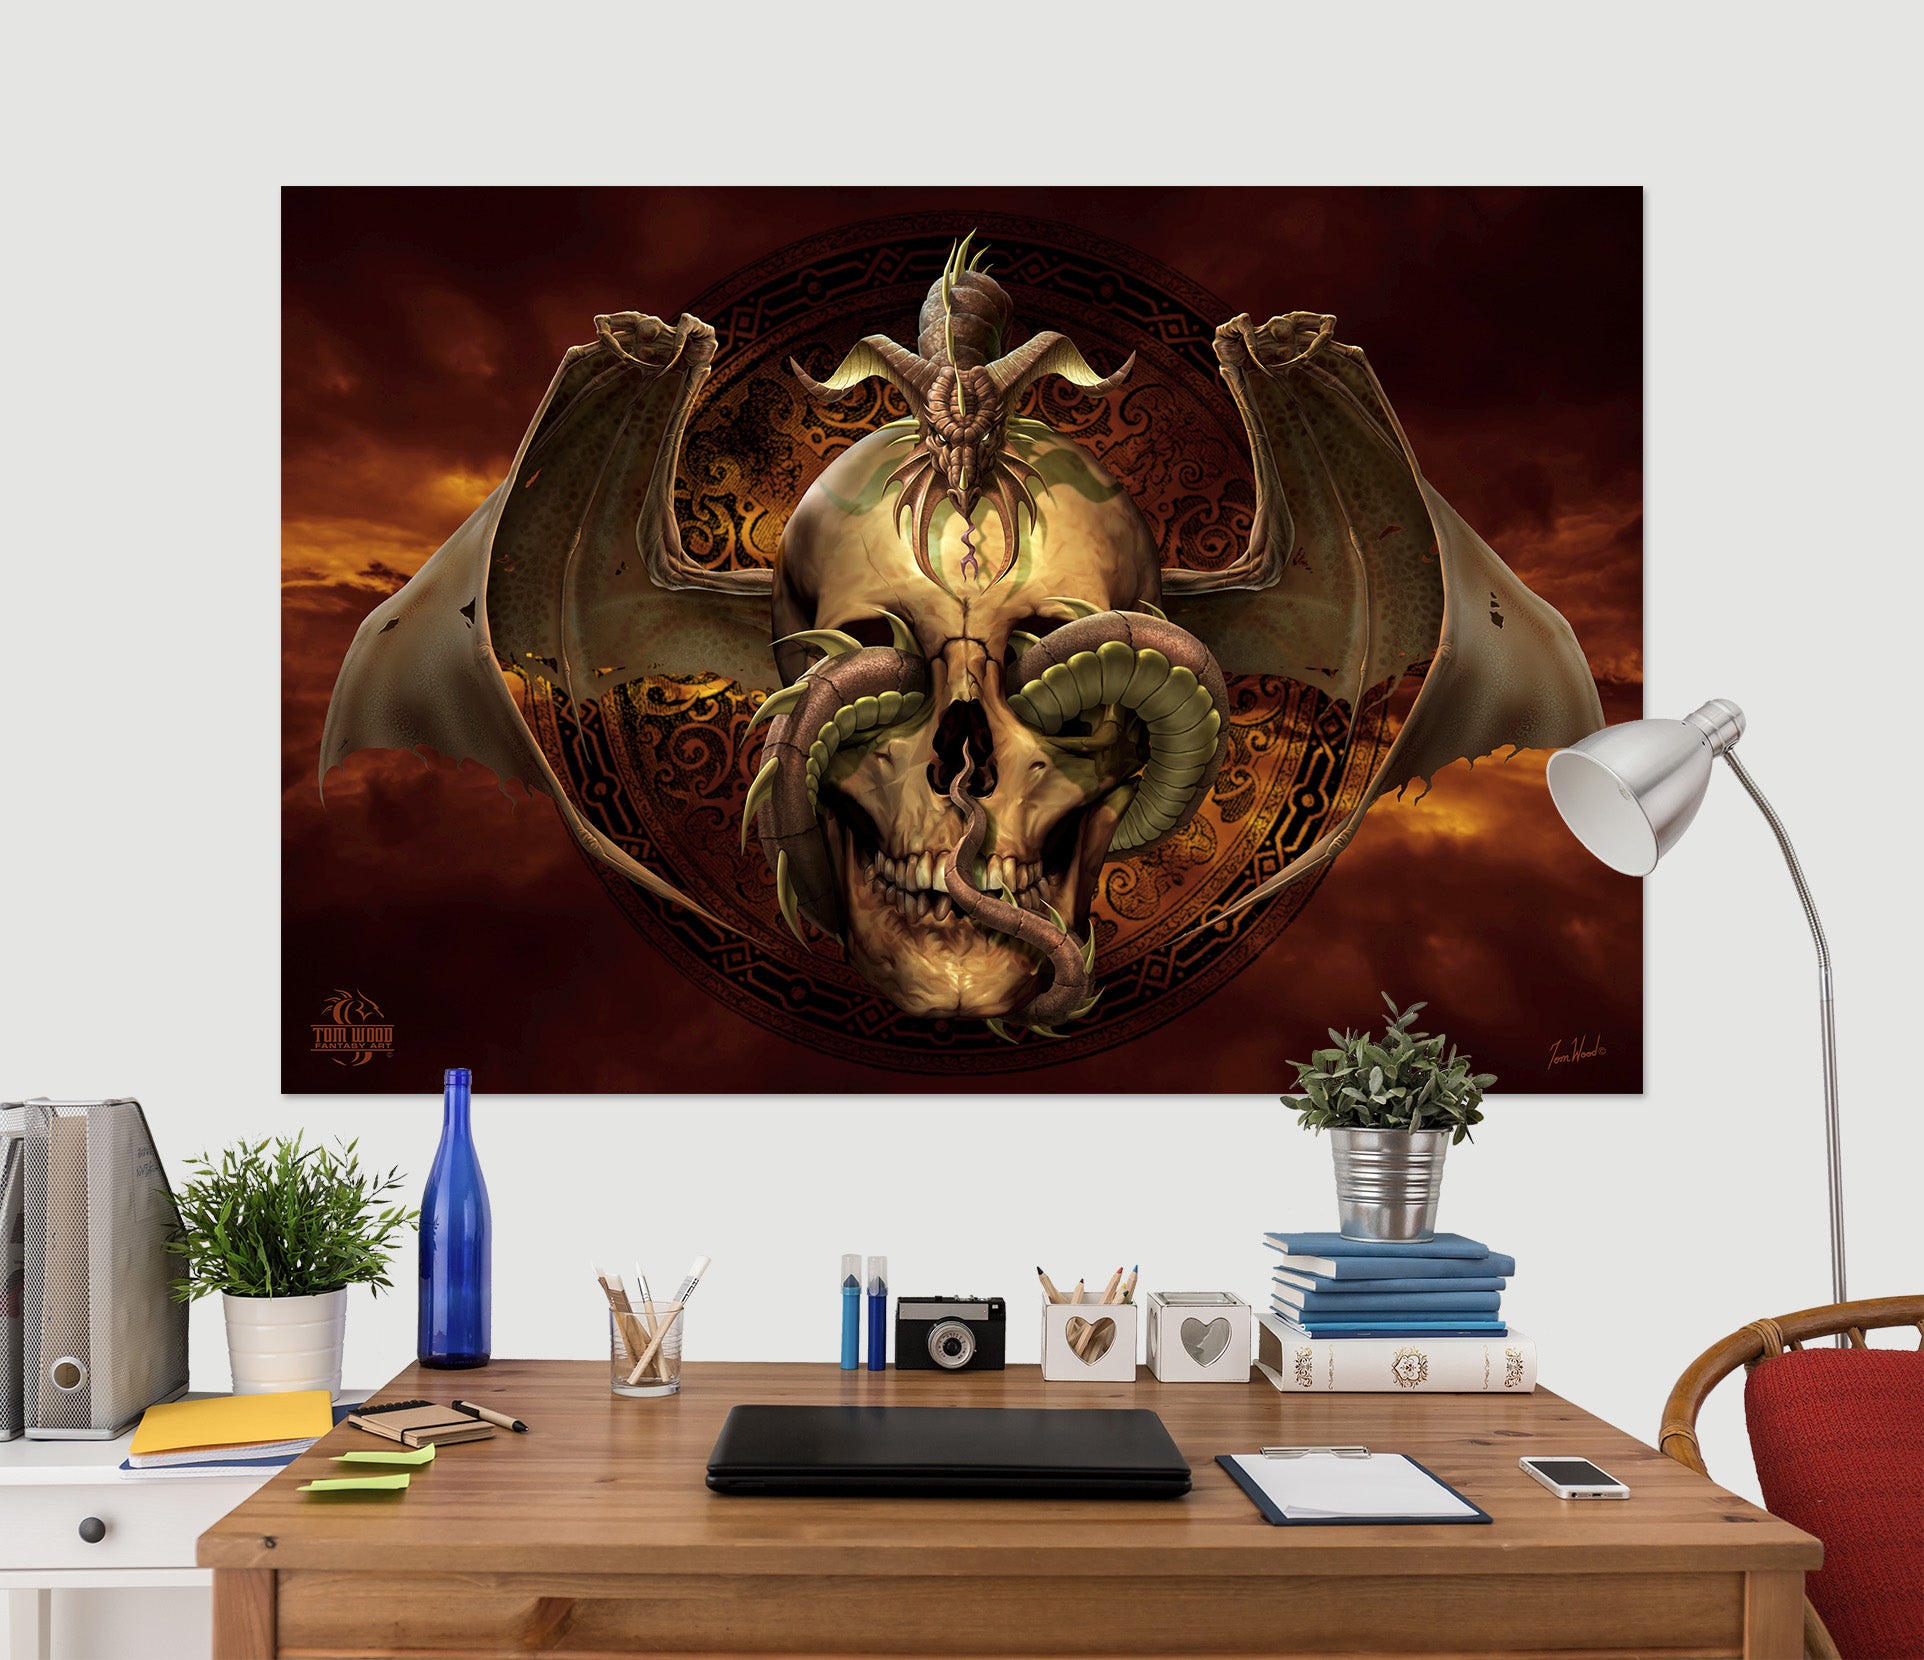 3D Skull Dragon 5100 Tom Wood Wall Sticker